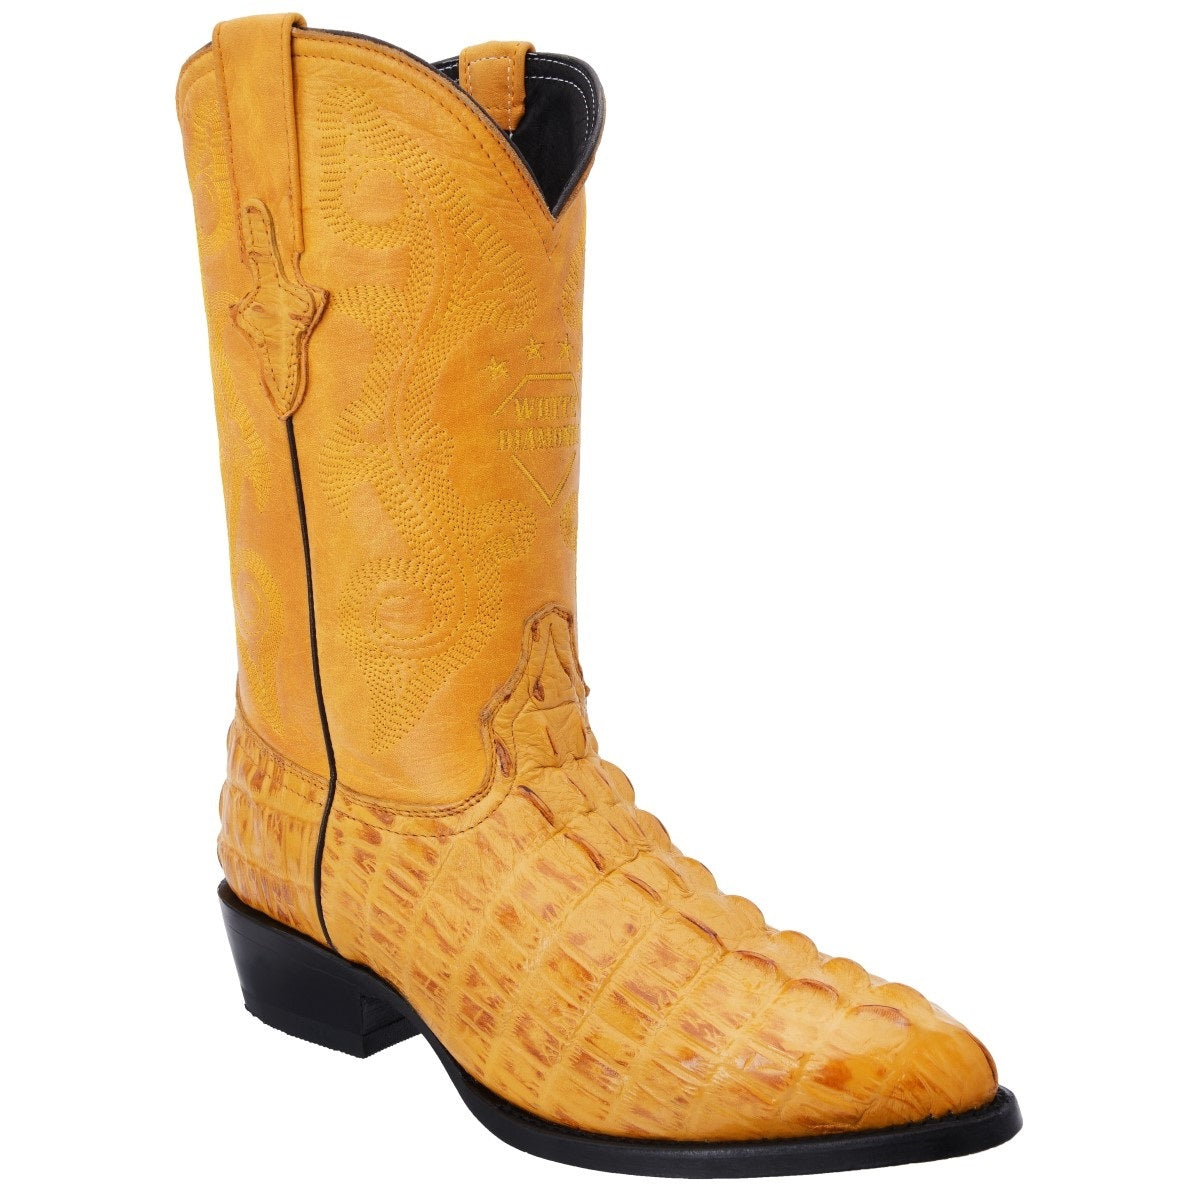 Botas Vaqueras TM-WD0276 - Western Boots